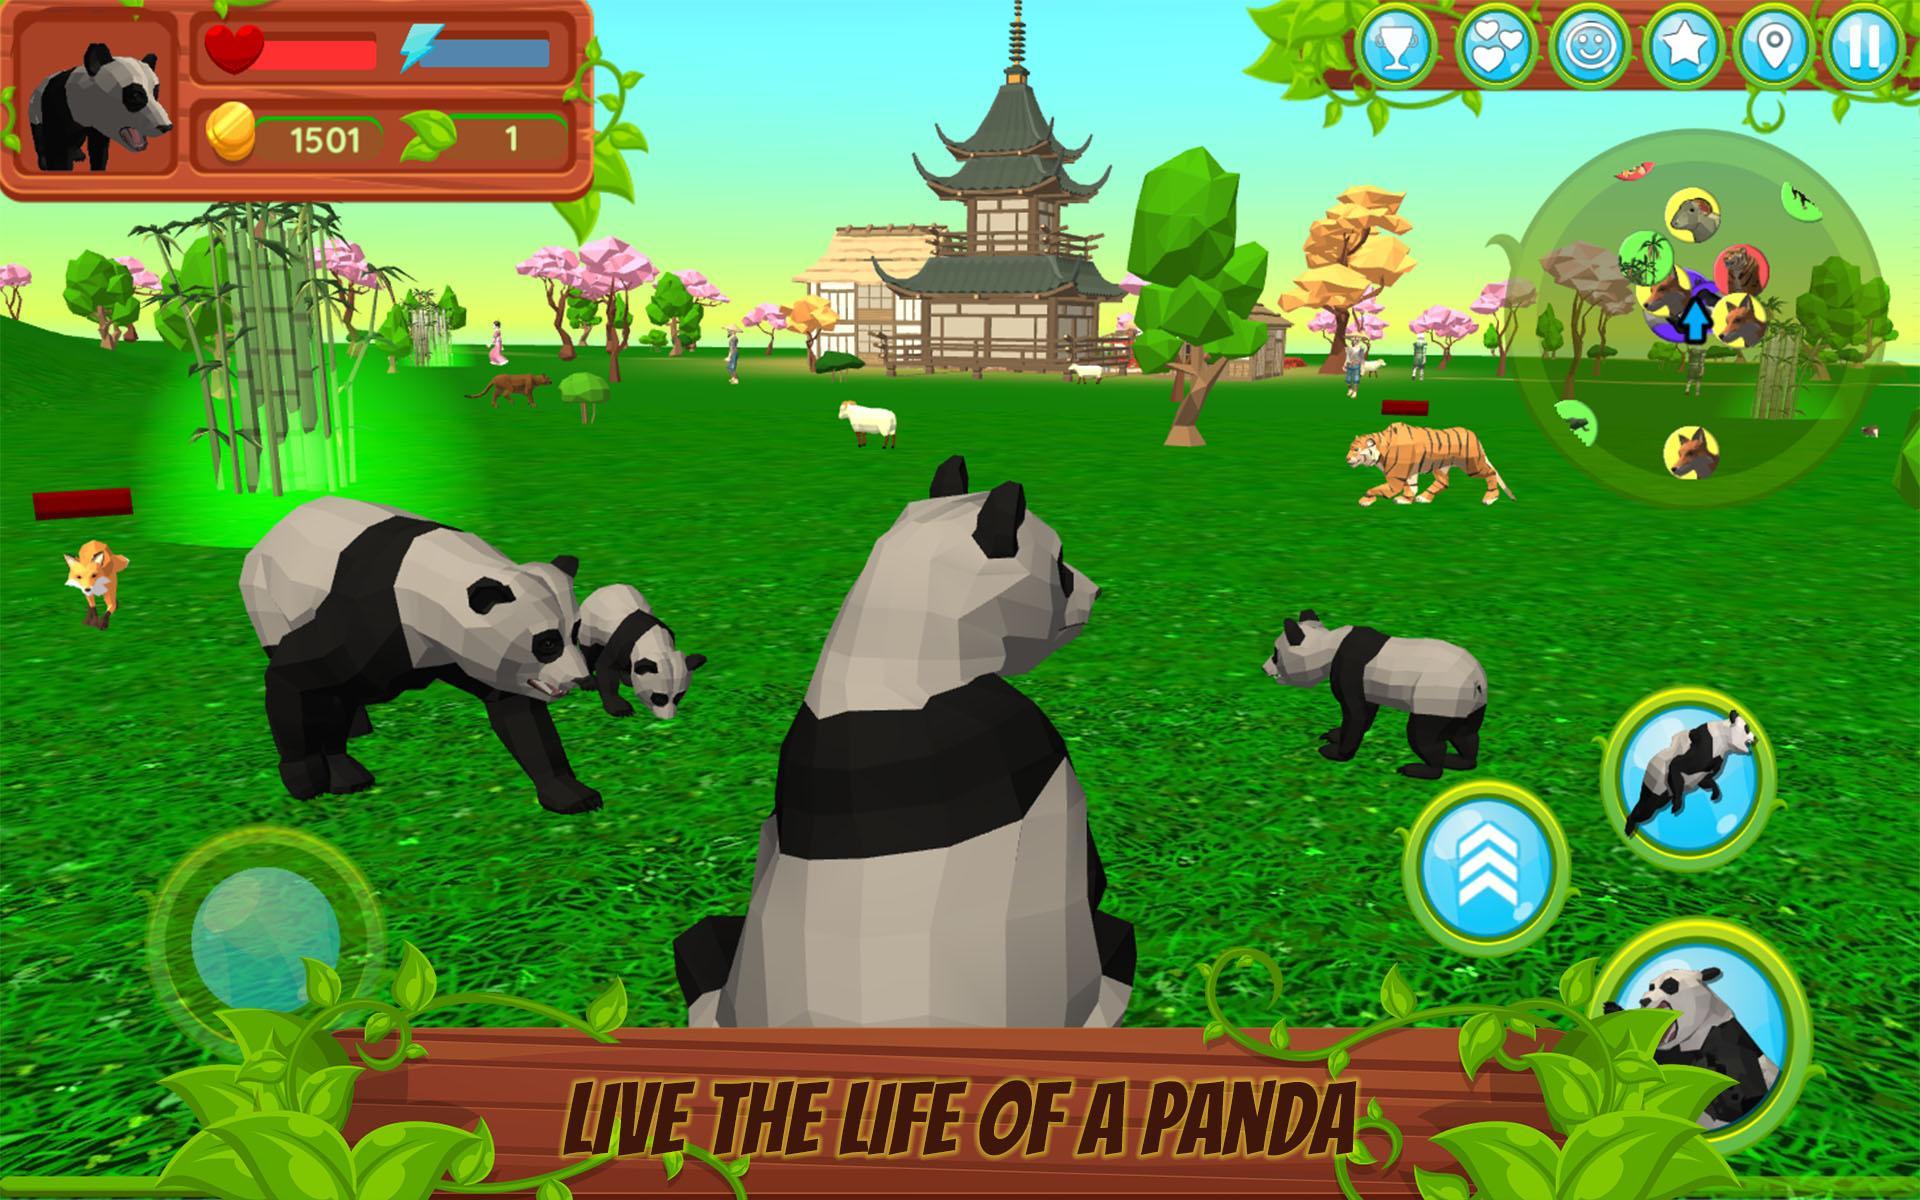 Screenshot 1 of Симулятор Панды 3D Игра Животных 1.054